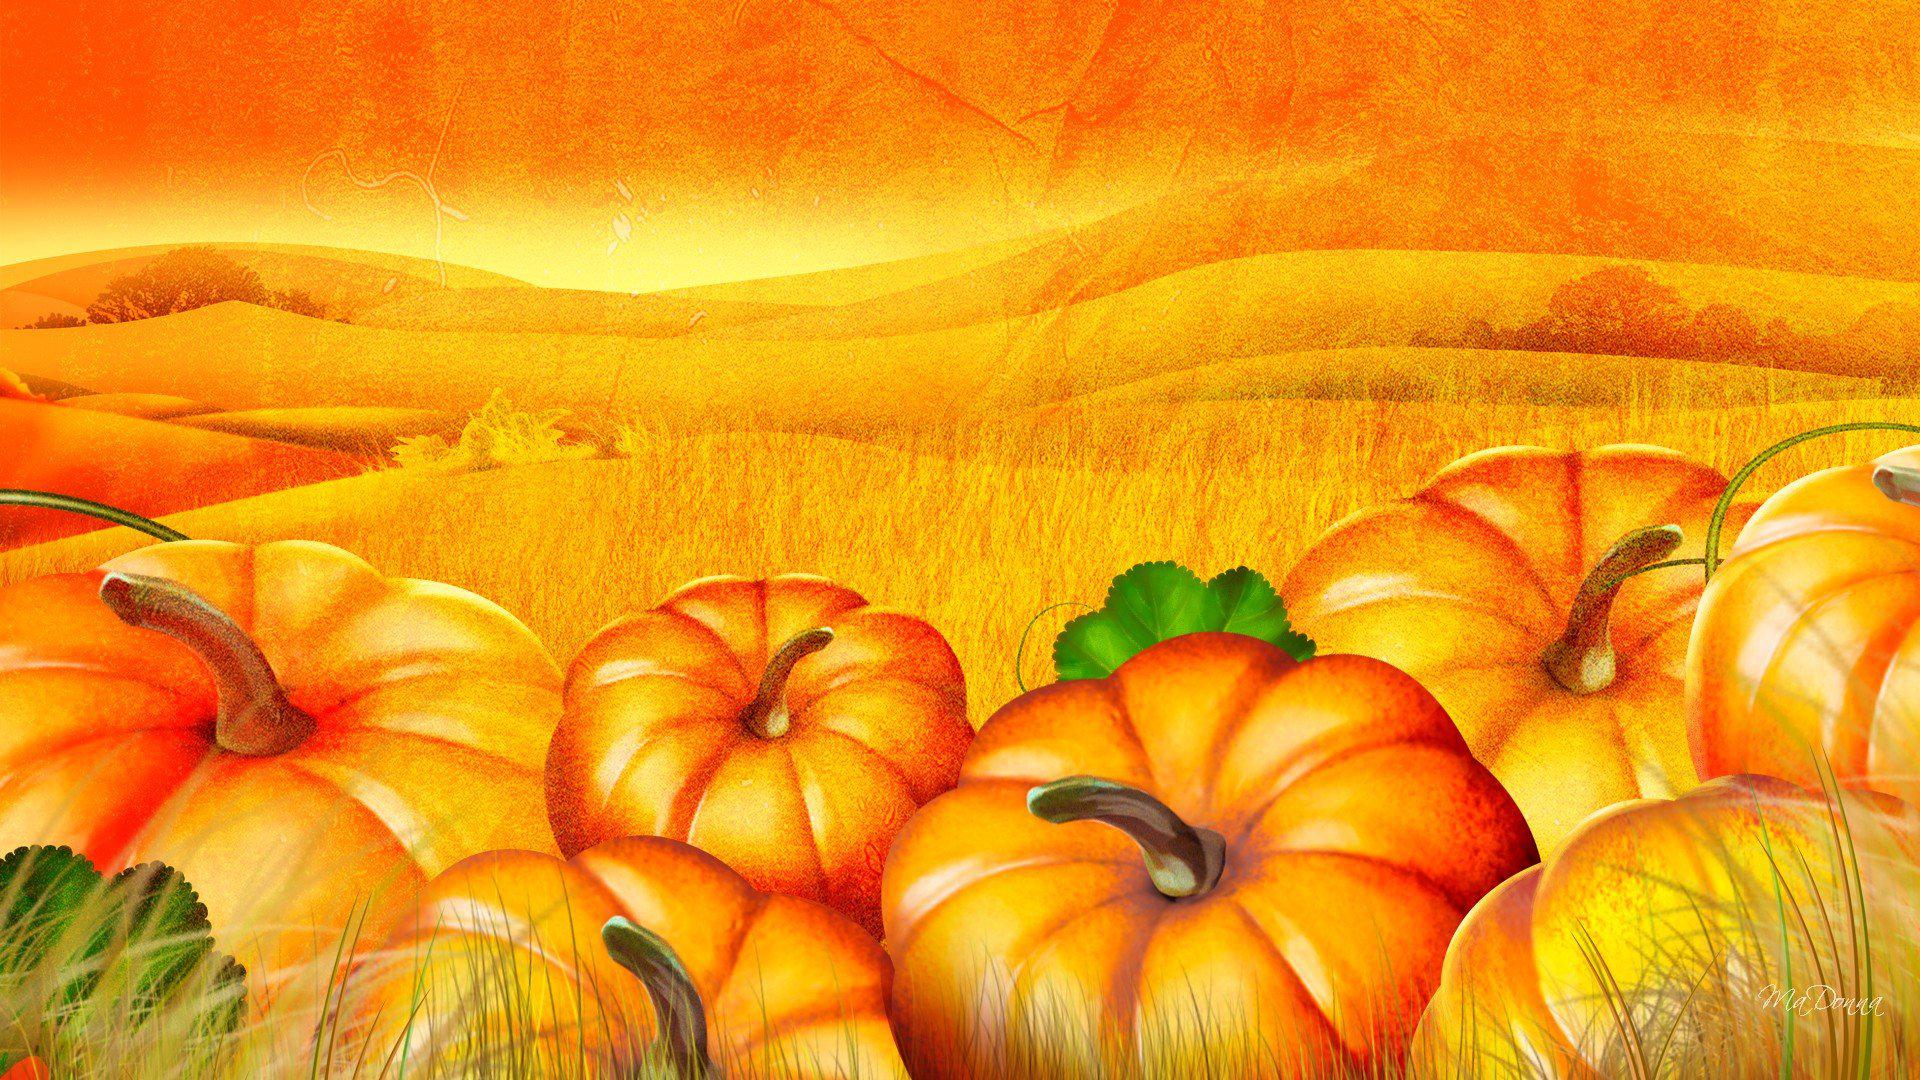 Pumpkin Patch Halloween Autumn Desktop Photo wallpaper | nature and